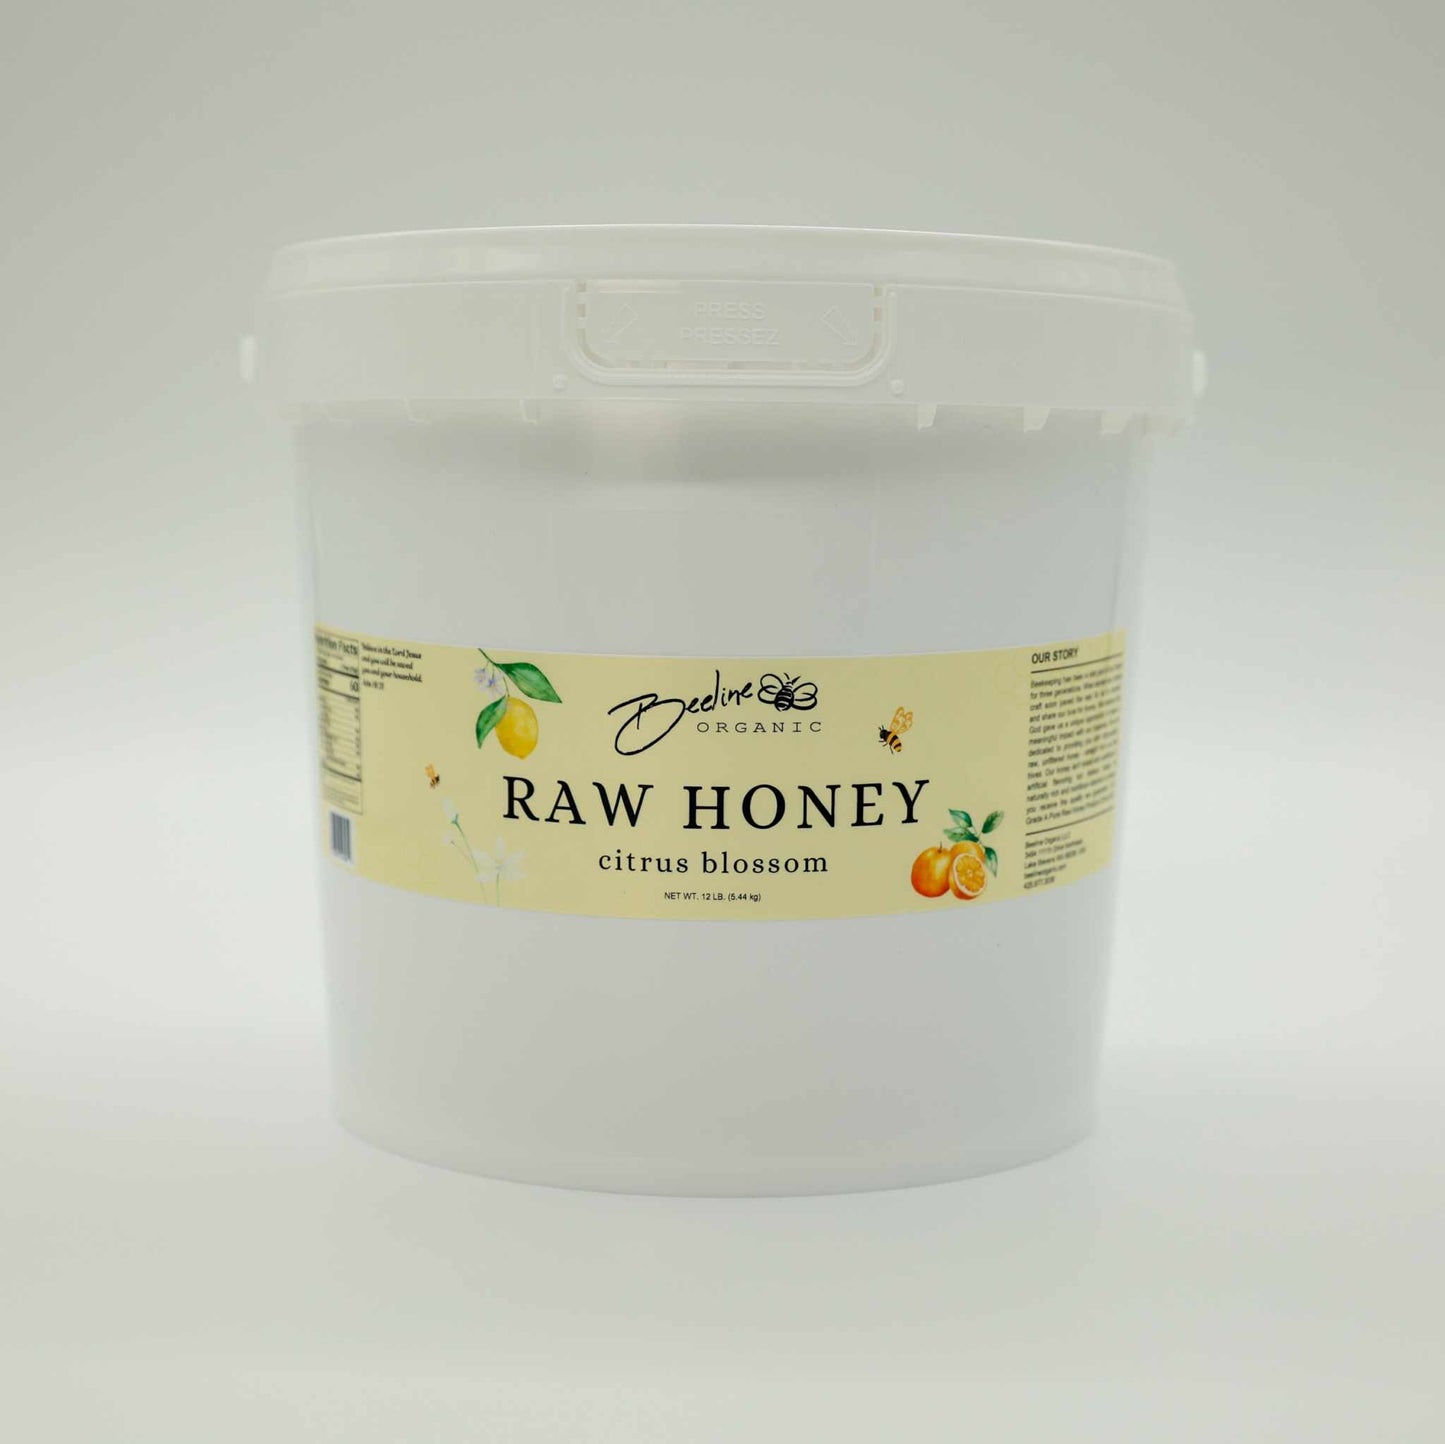 Citrus Blossom Raw Honey 1 Gallon Bucket